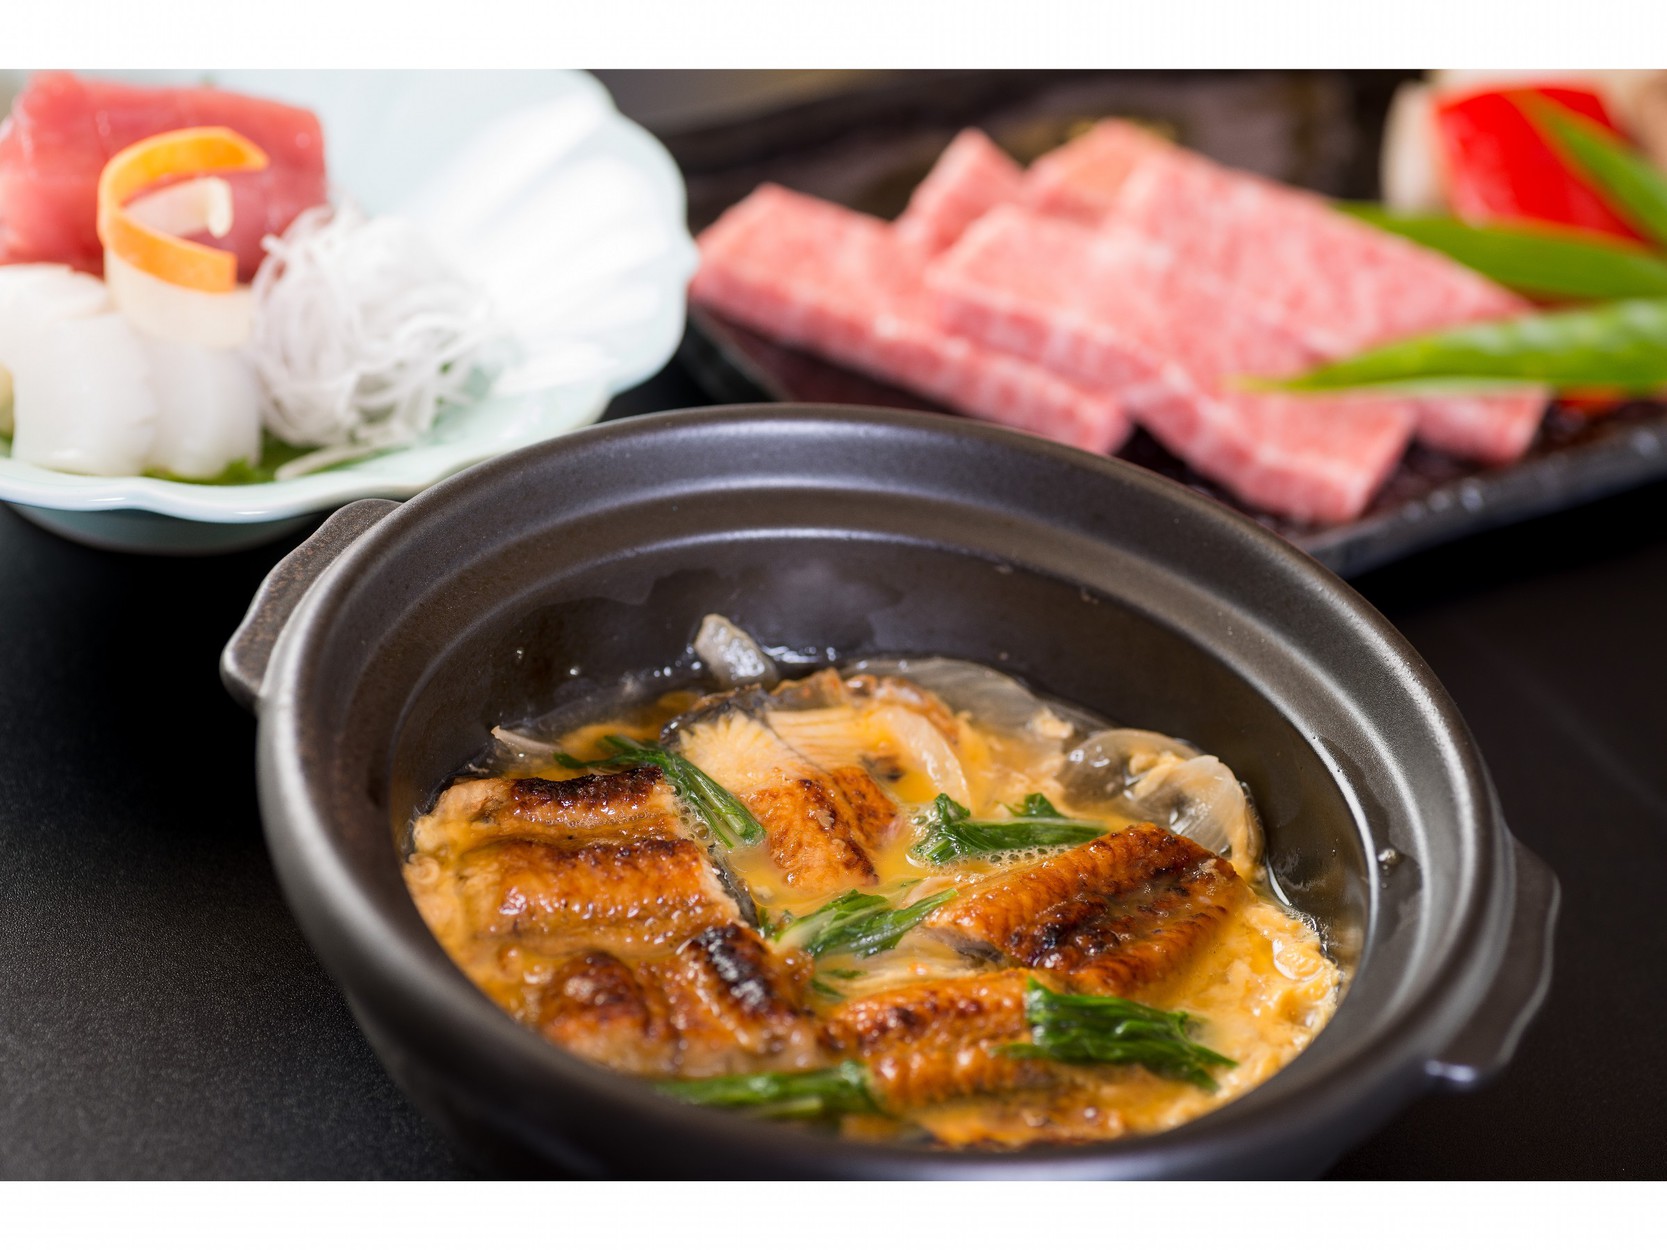 京会席【貴船】の夕食とお豆腐食べ比べ朝食を楽しむ♪1泊2食付きプラン